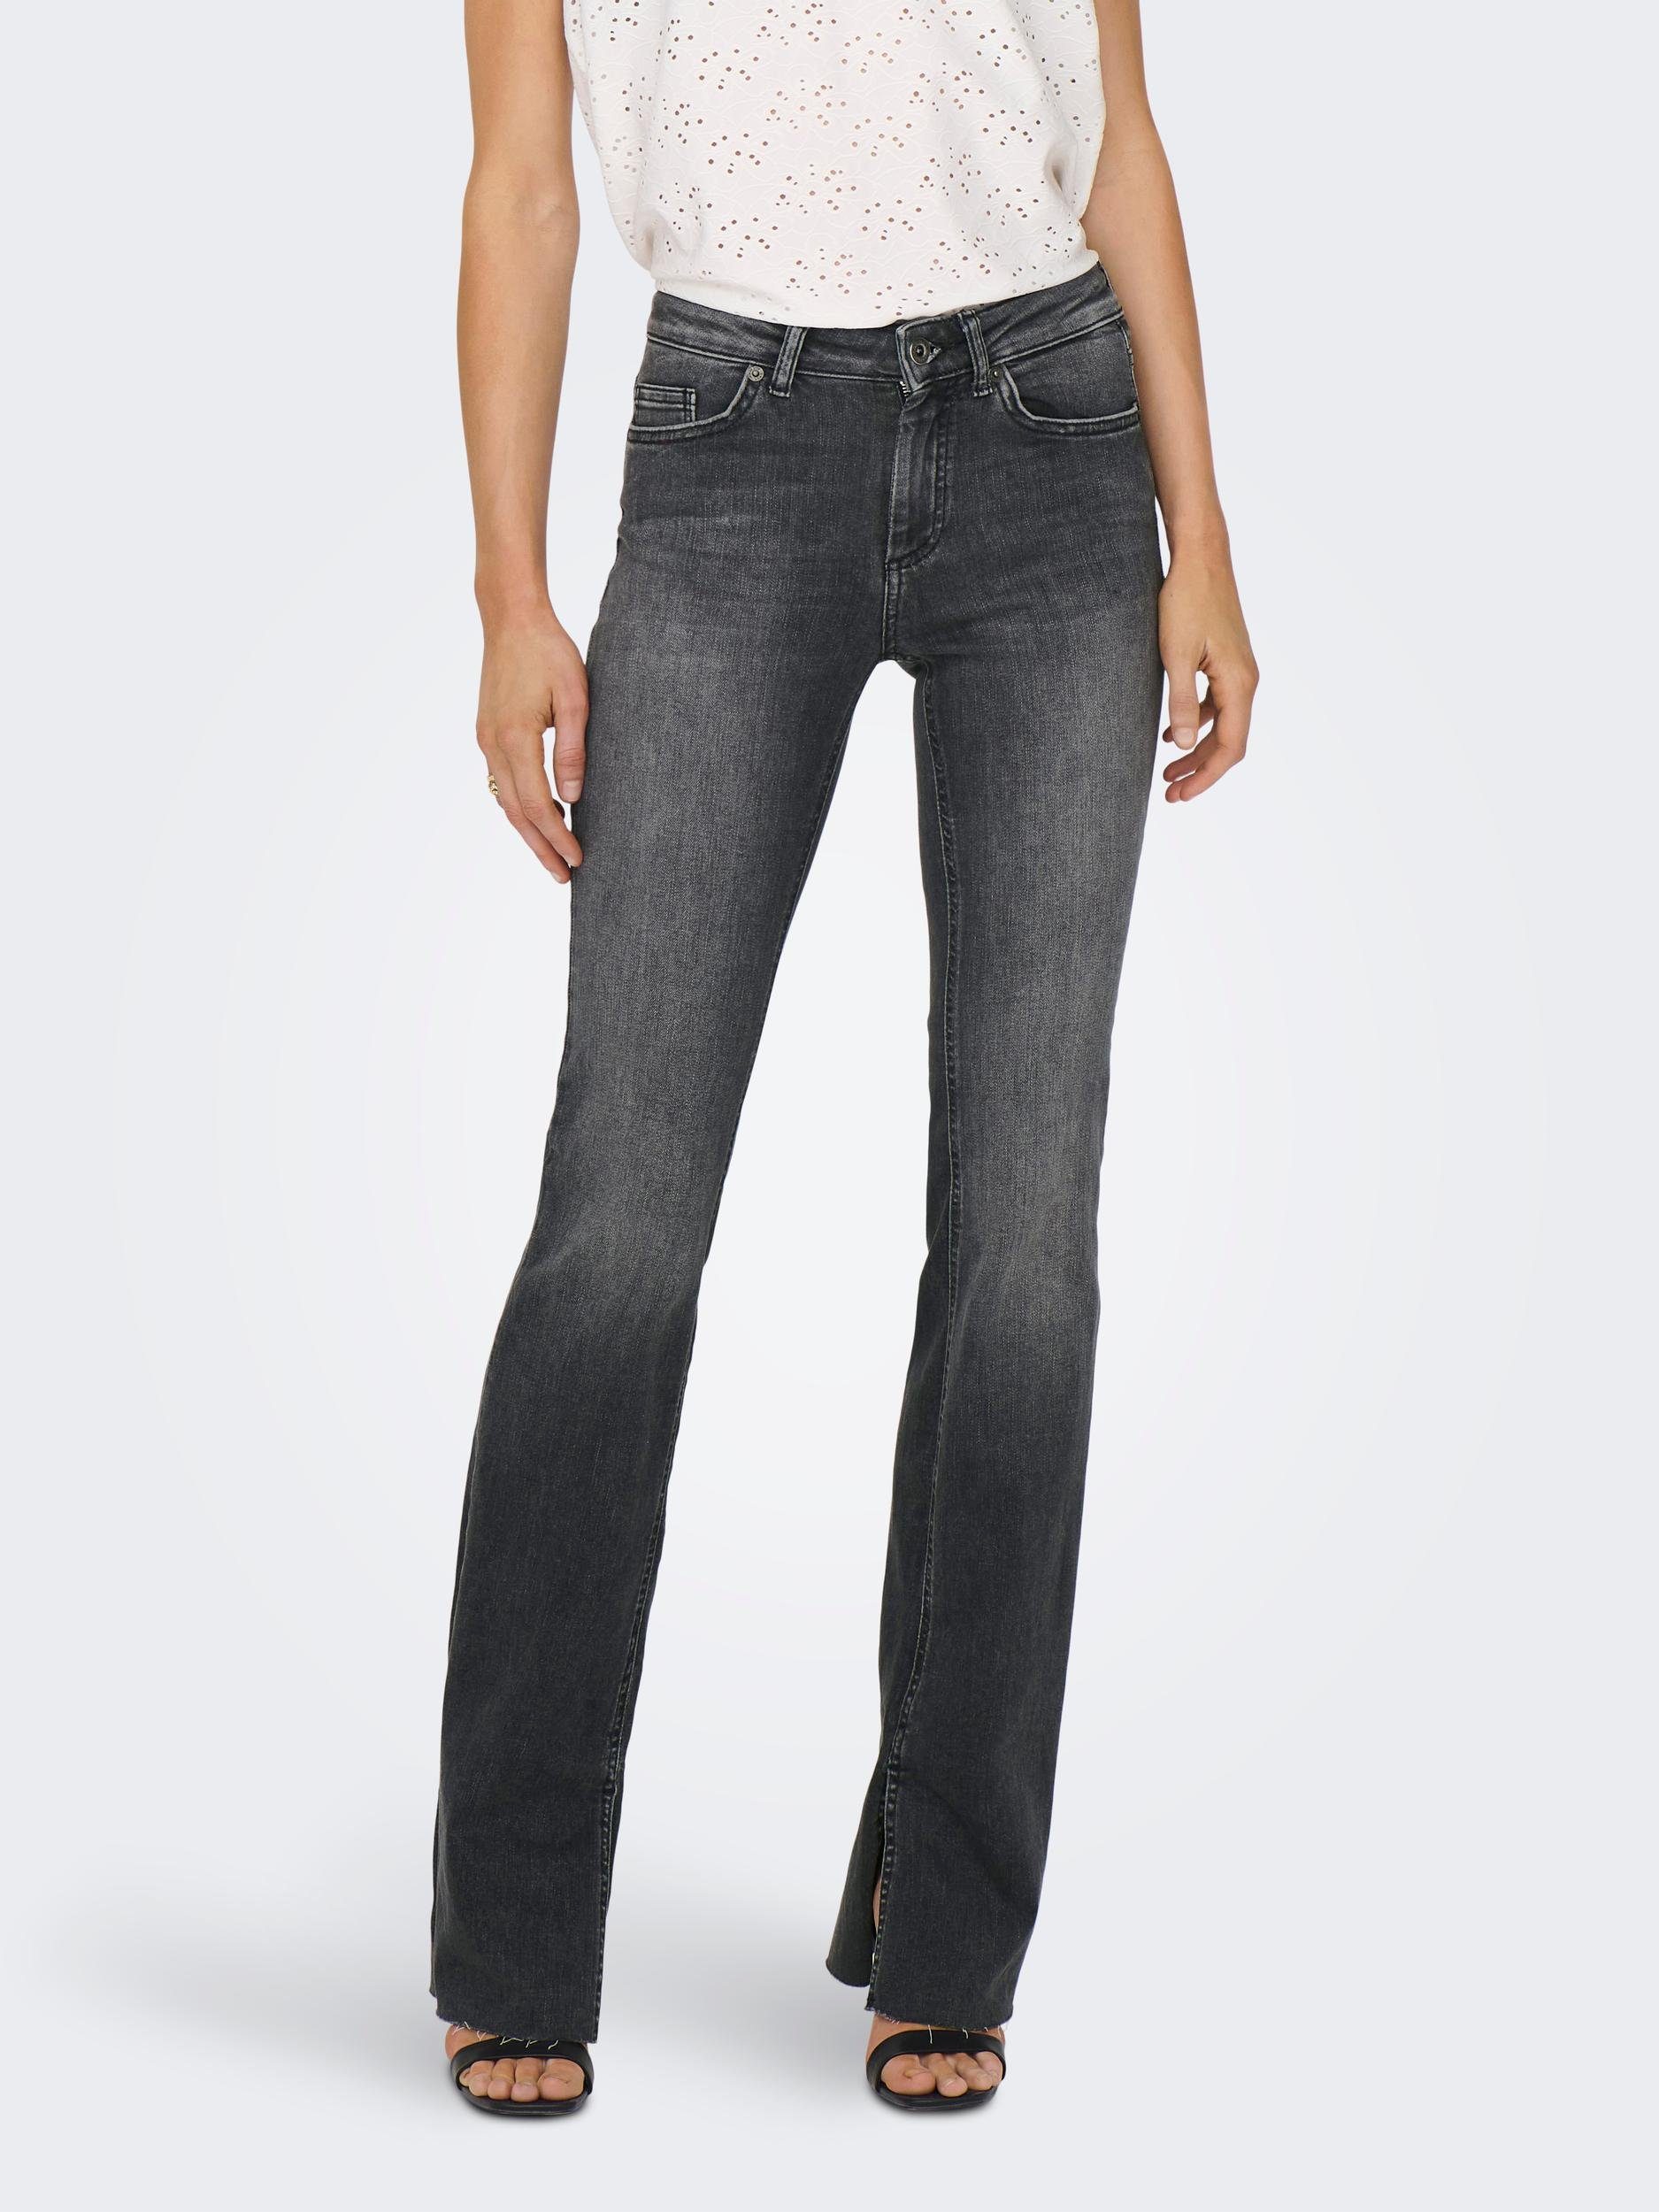 Graue Bootcut-Jeans für Damen kaufen online OTTO 